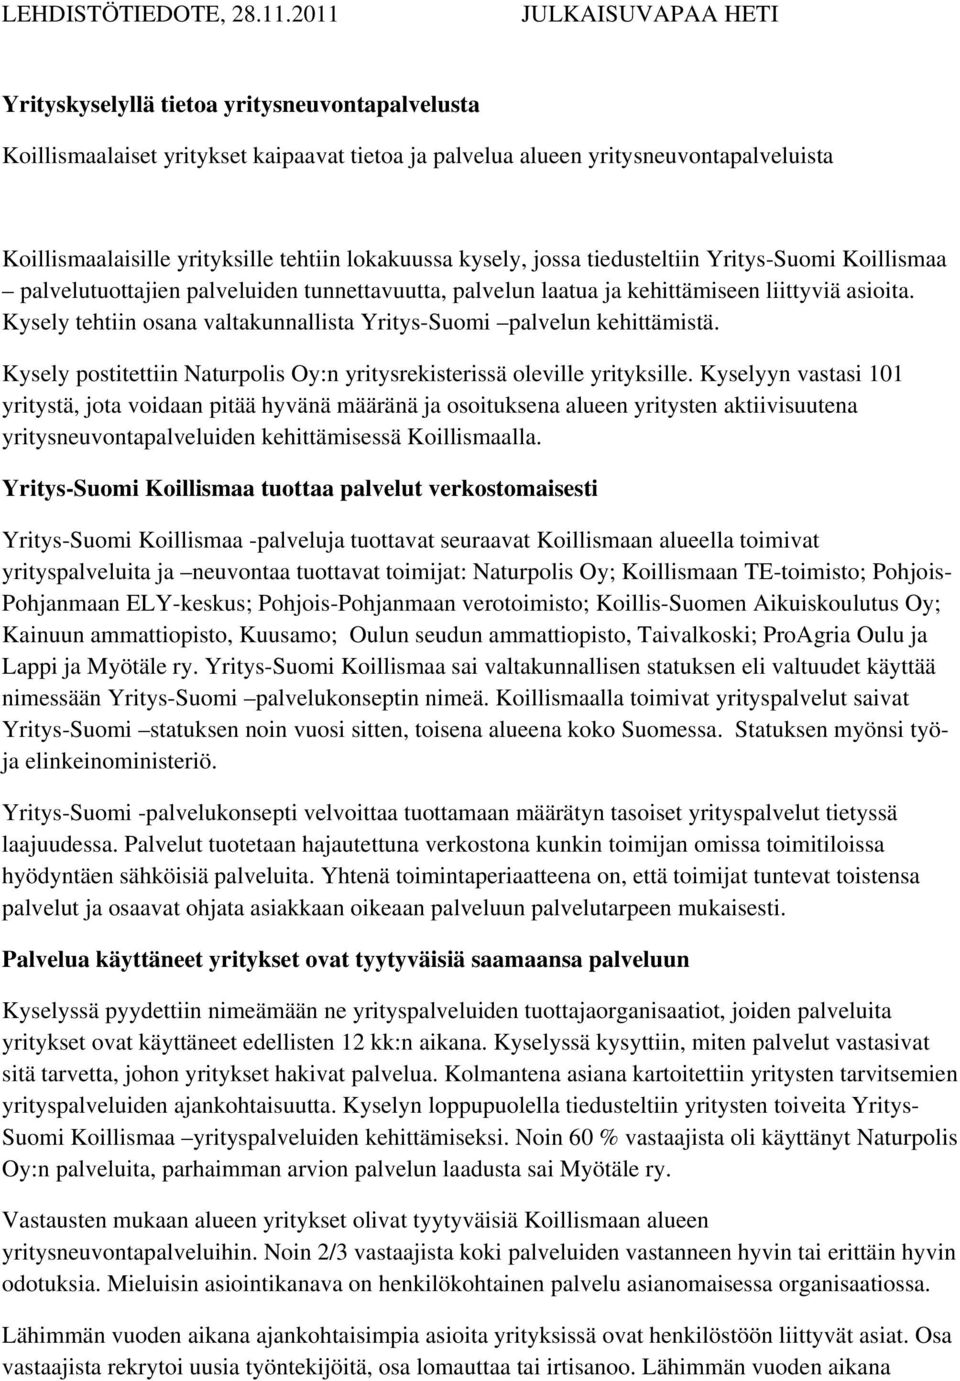 lokakuussa kysely, jossa tiedusteltiin Yritys-Suomi Koillismaa palvelutuottajien palveluiden tunnettavuutta, palvelun laatua ja kehittämiseen liittyviä asioita.